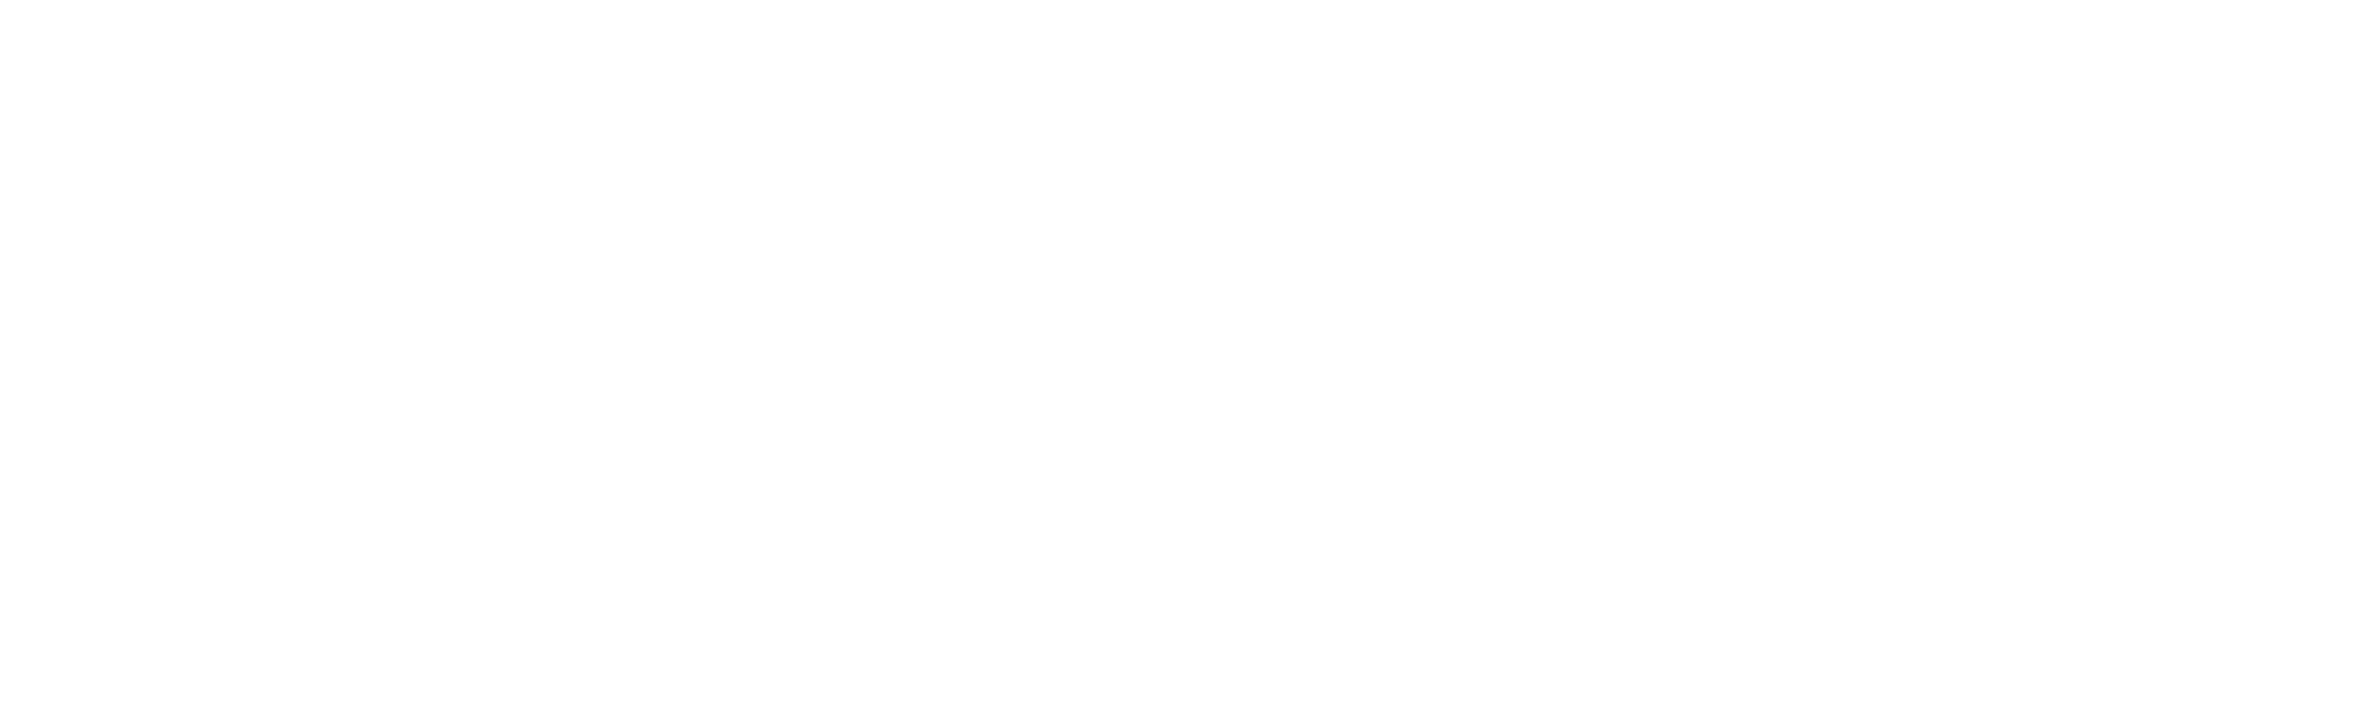 Spotify_Logo_white